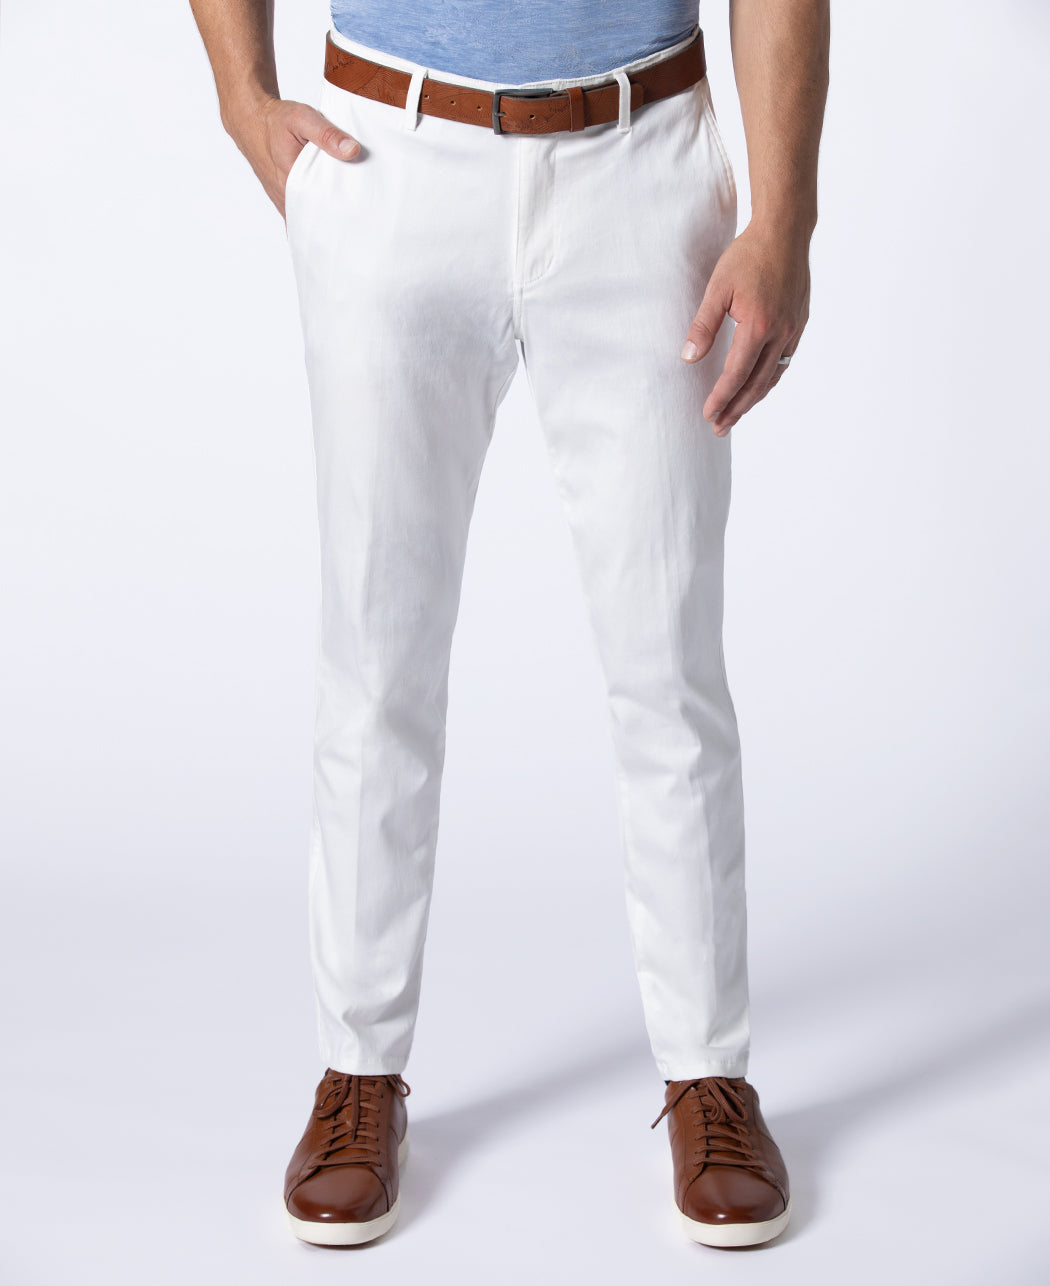 Monte Carlo Cotton & Tencel™ Pants - 30